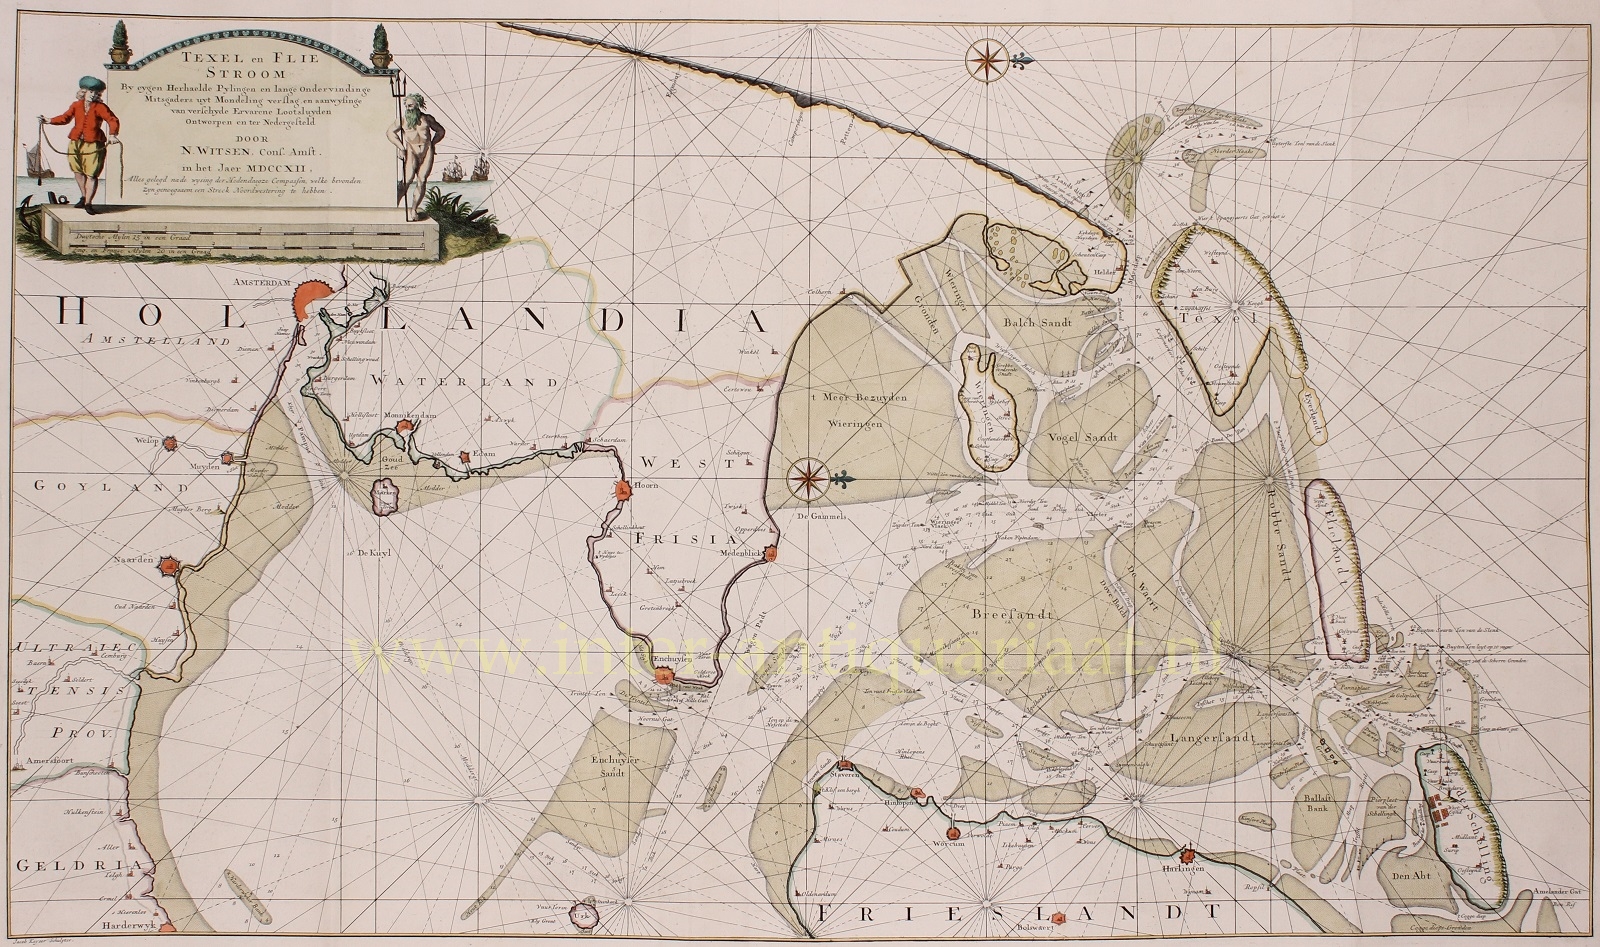 Covens & Mortier - Zuiderzee, Texel, Vlieland, Terschelling - Nicolaas Witsen + Covens & Mortier, 1712